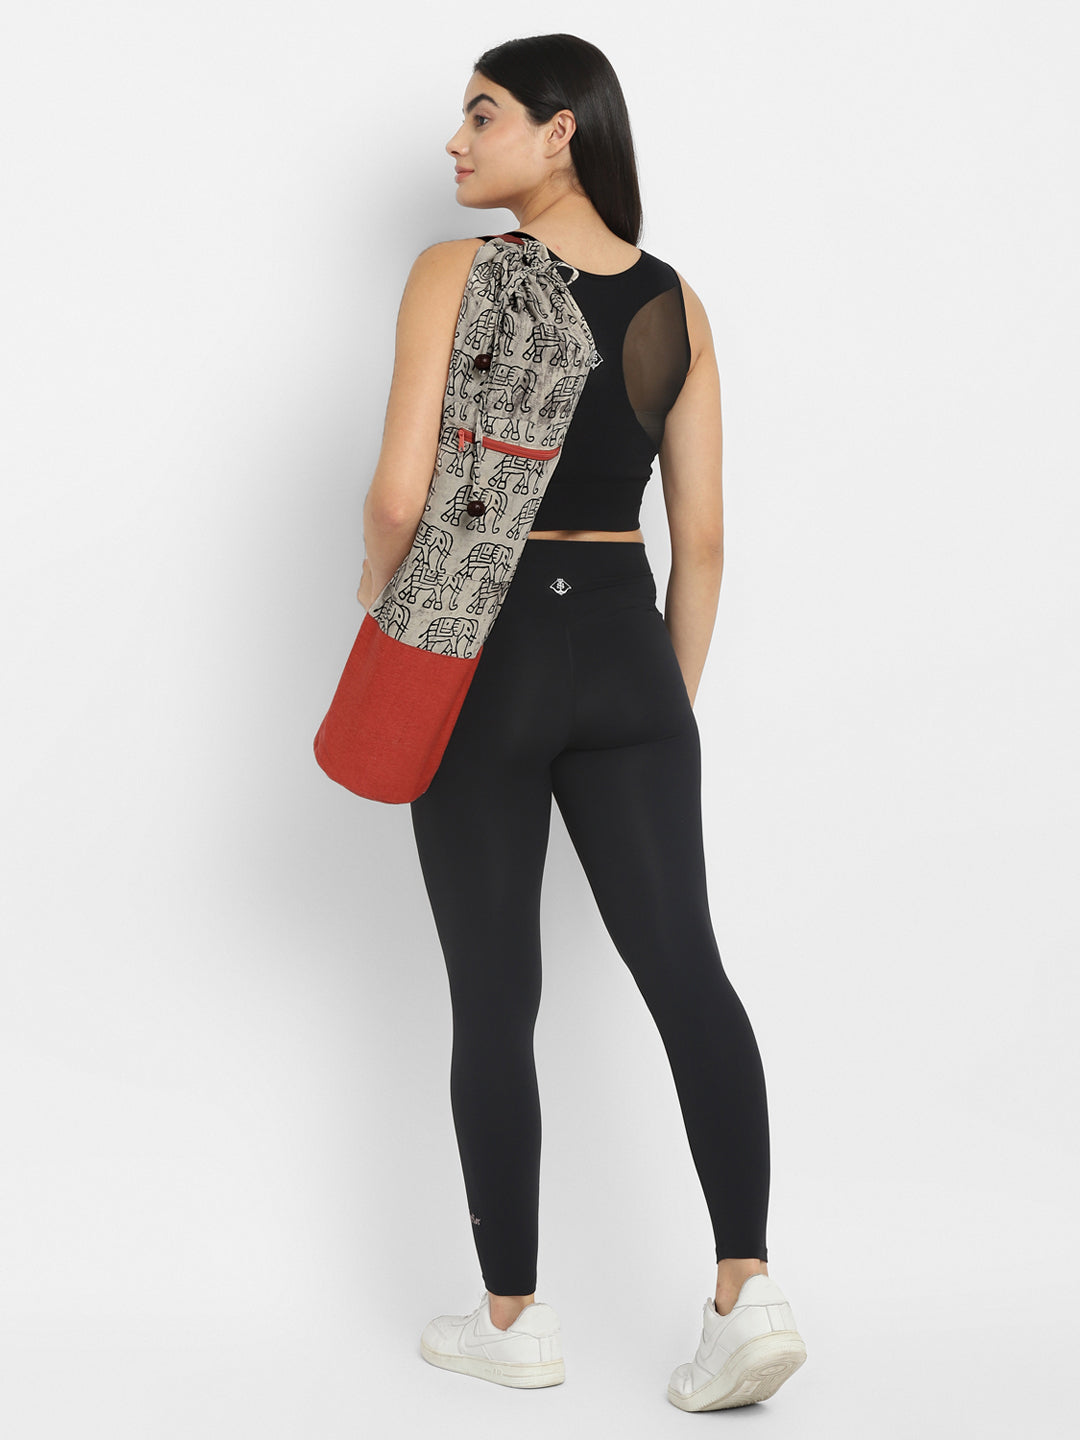 WYOERN Shoulder Bag for Men Yoga Mat Backpack Yoga Mat Carrier Bag